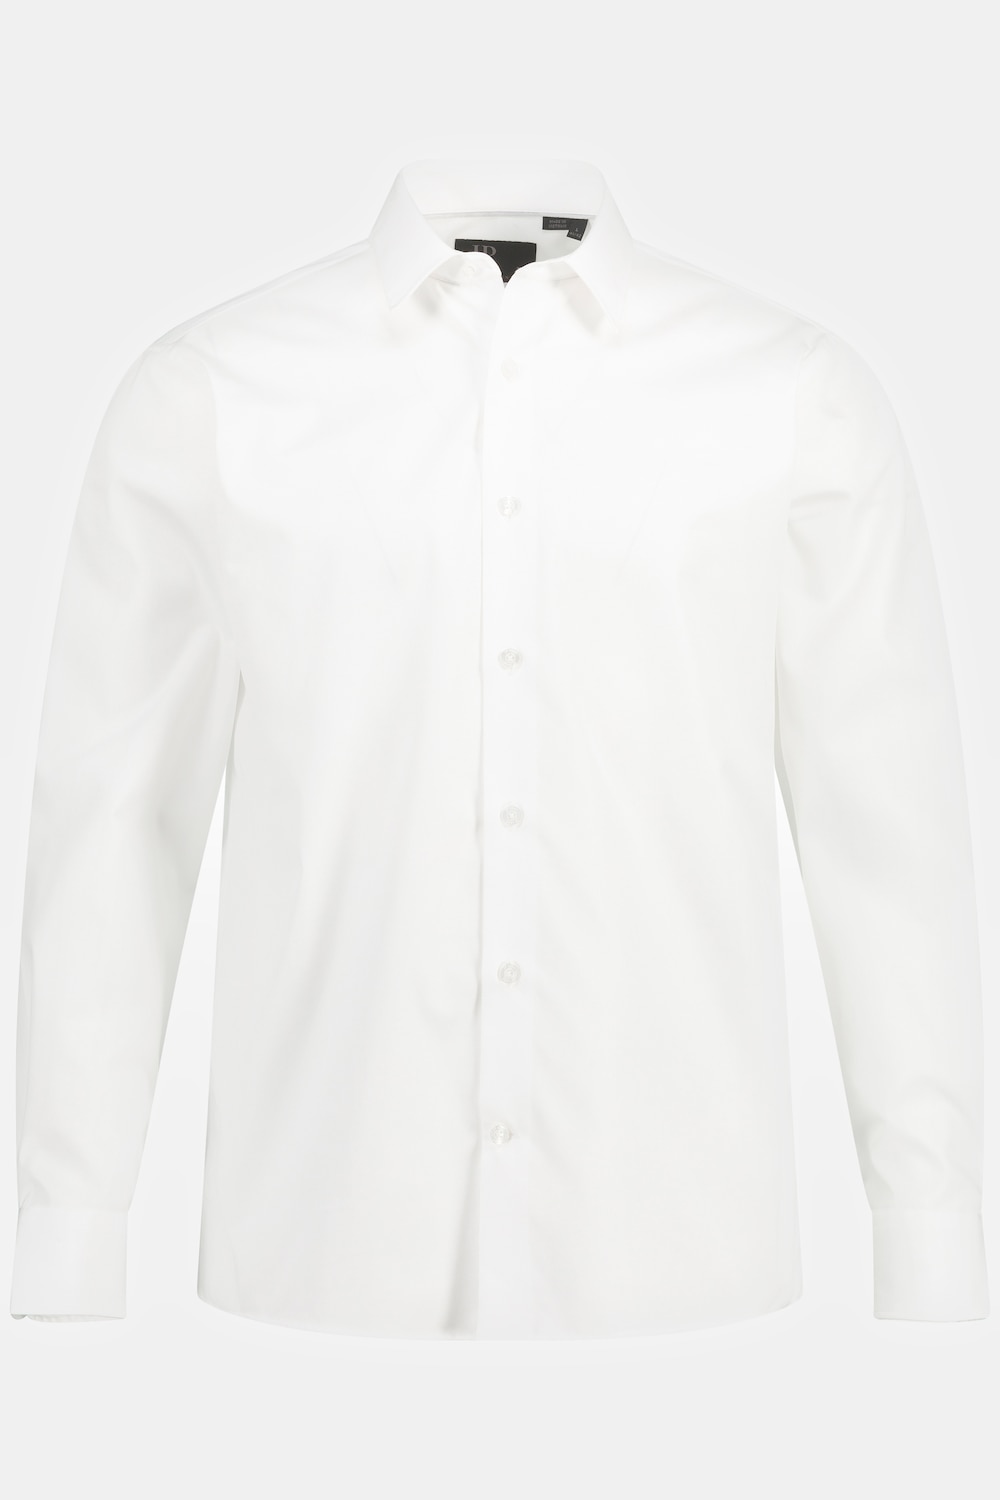 Grote Maten business overhemd, Heren, wit, Maat: 7XL, Katoen, JP1880